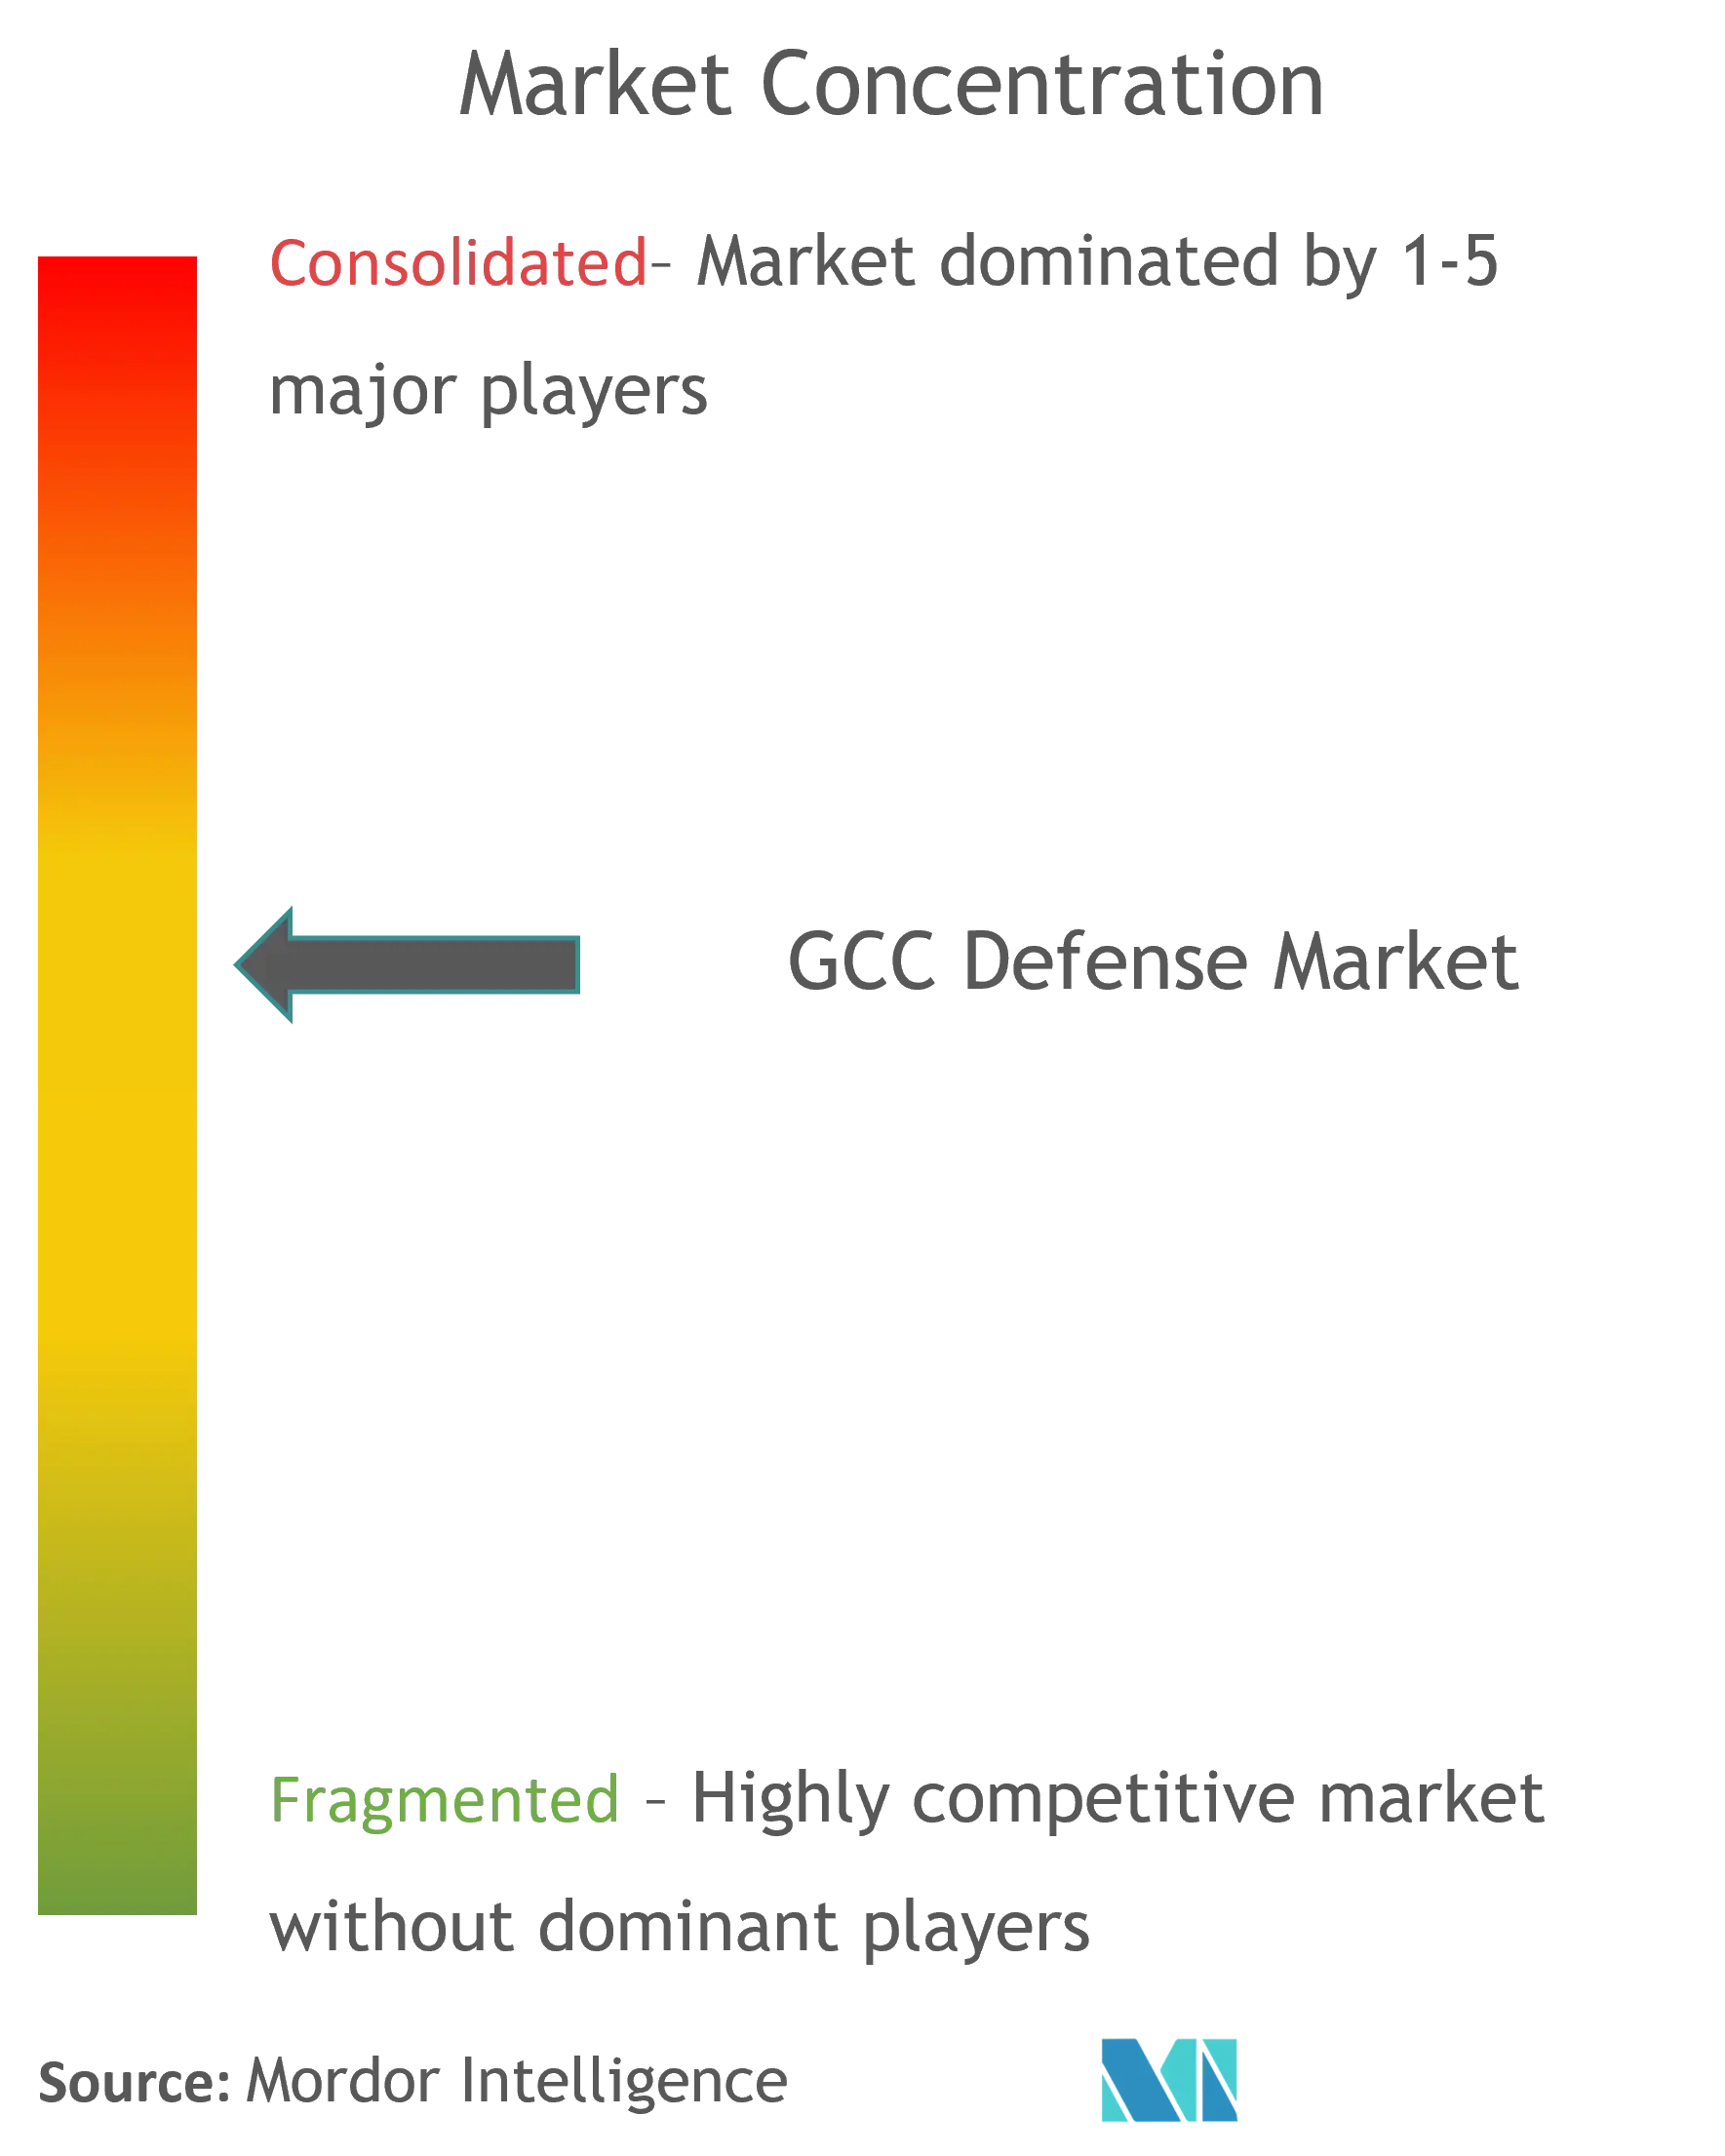 Concentração do mercado de defesa do GCC